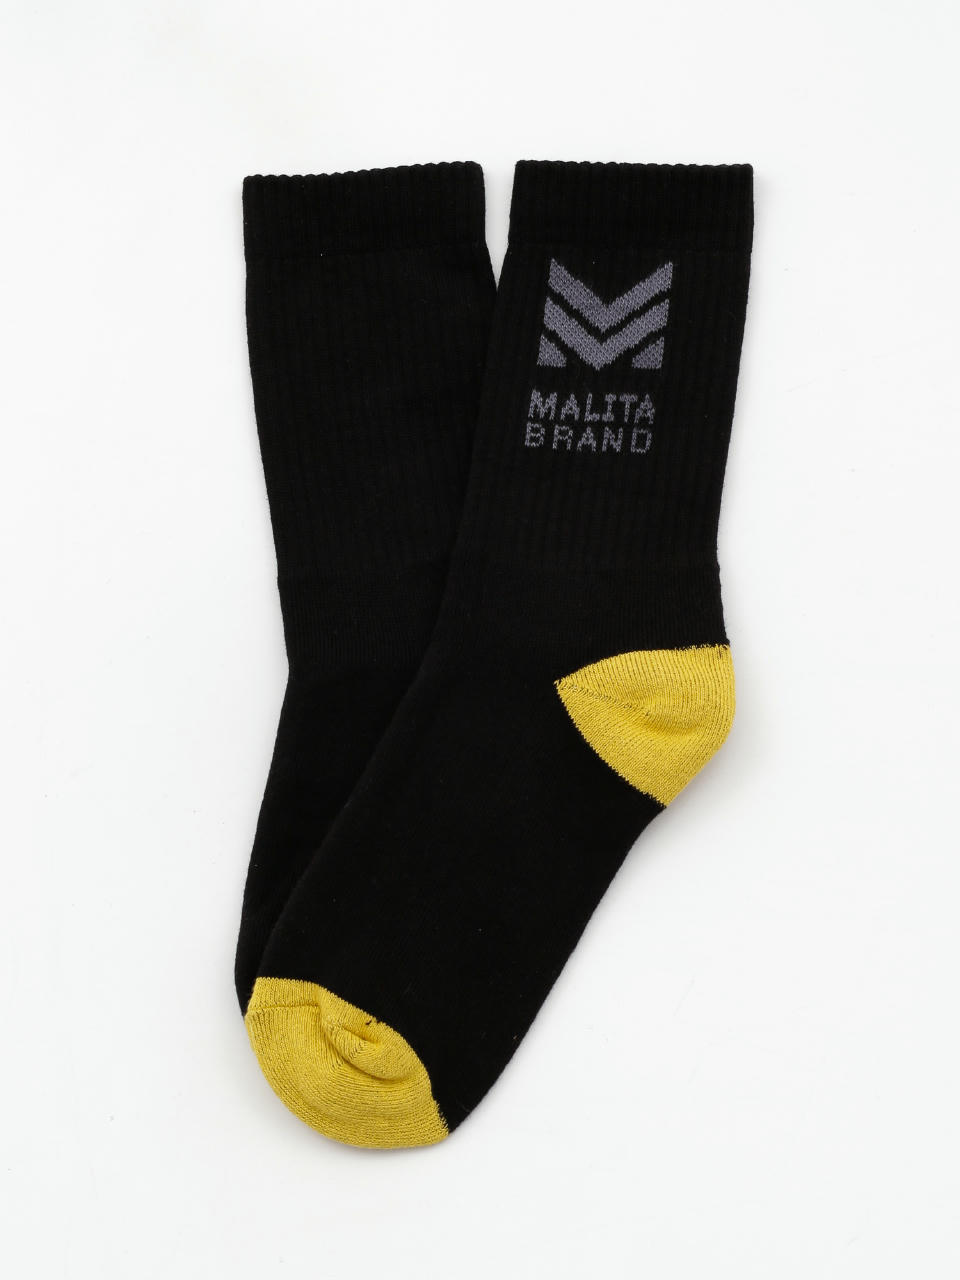 Malita Mlt M Socks (black/yellow)